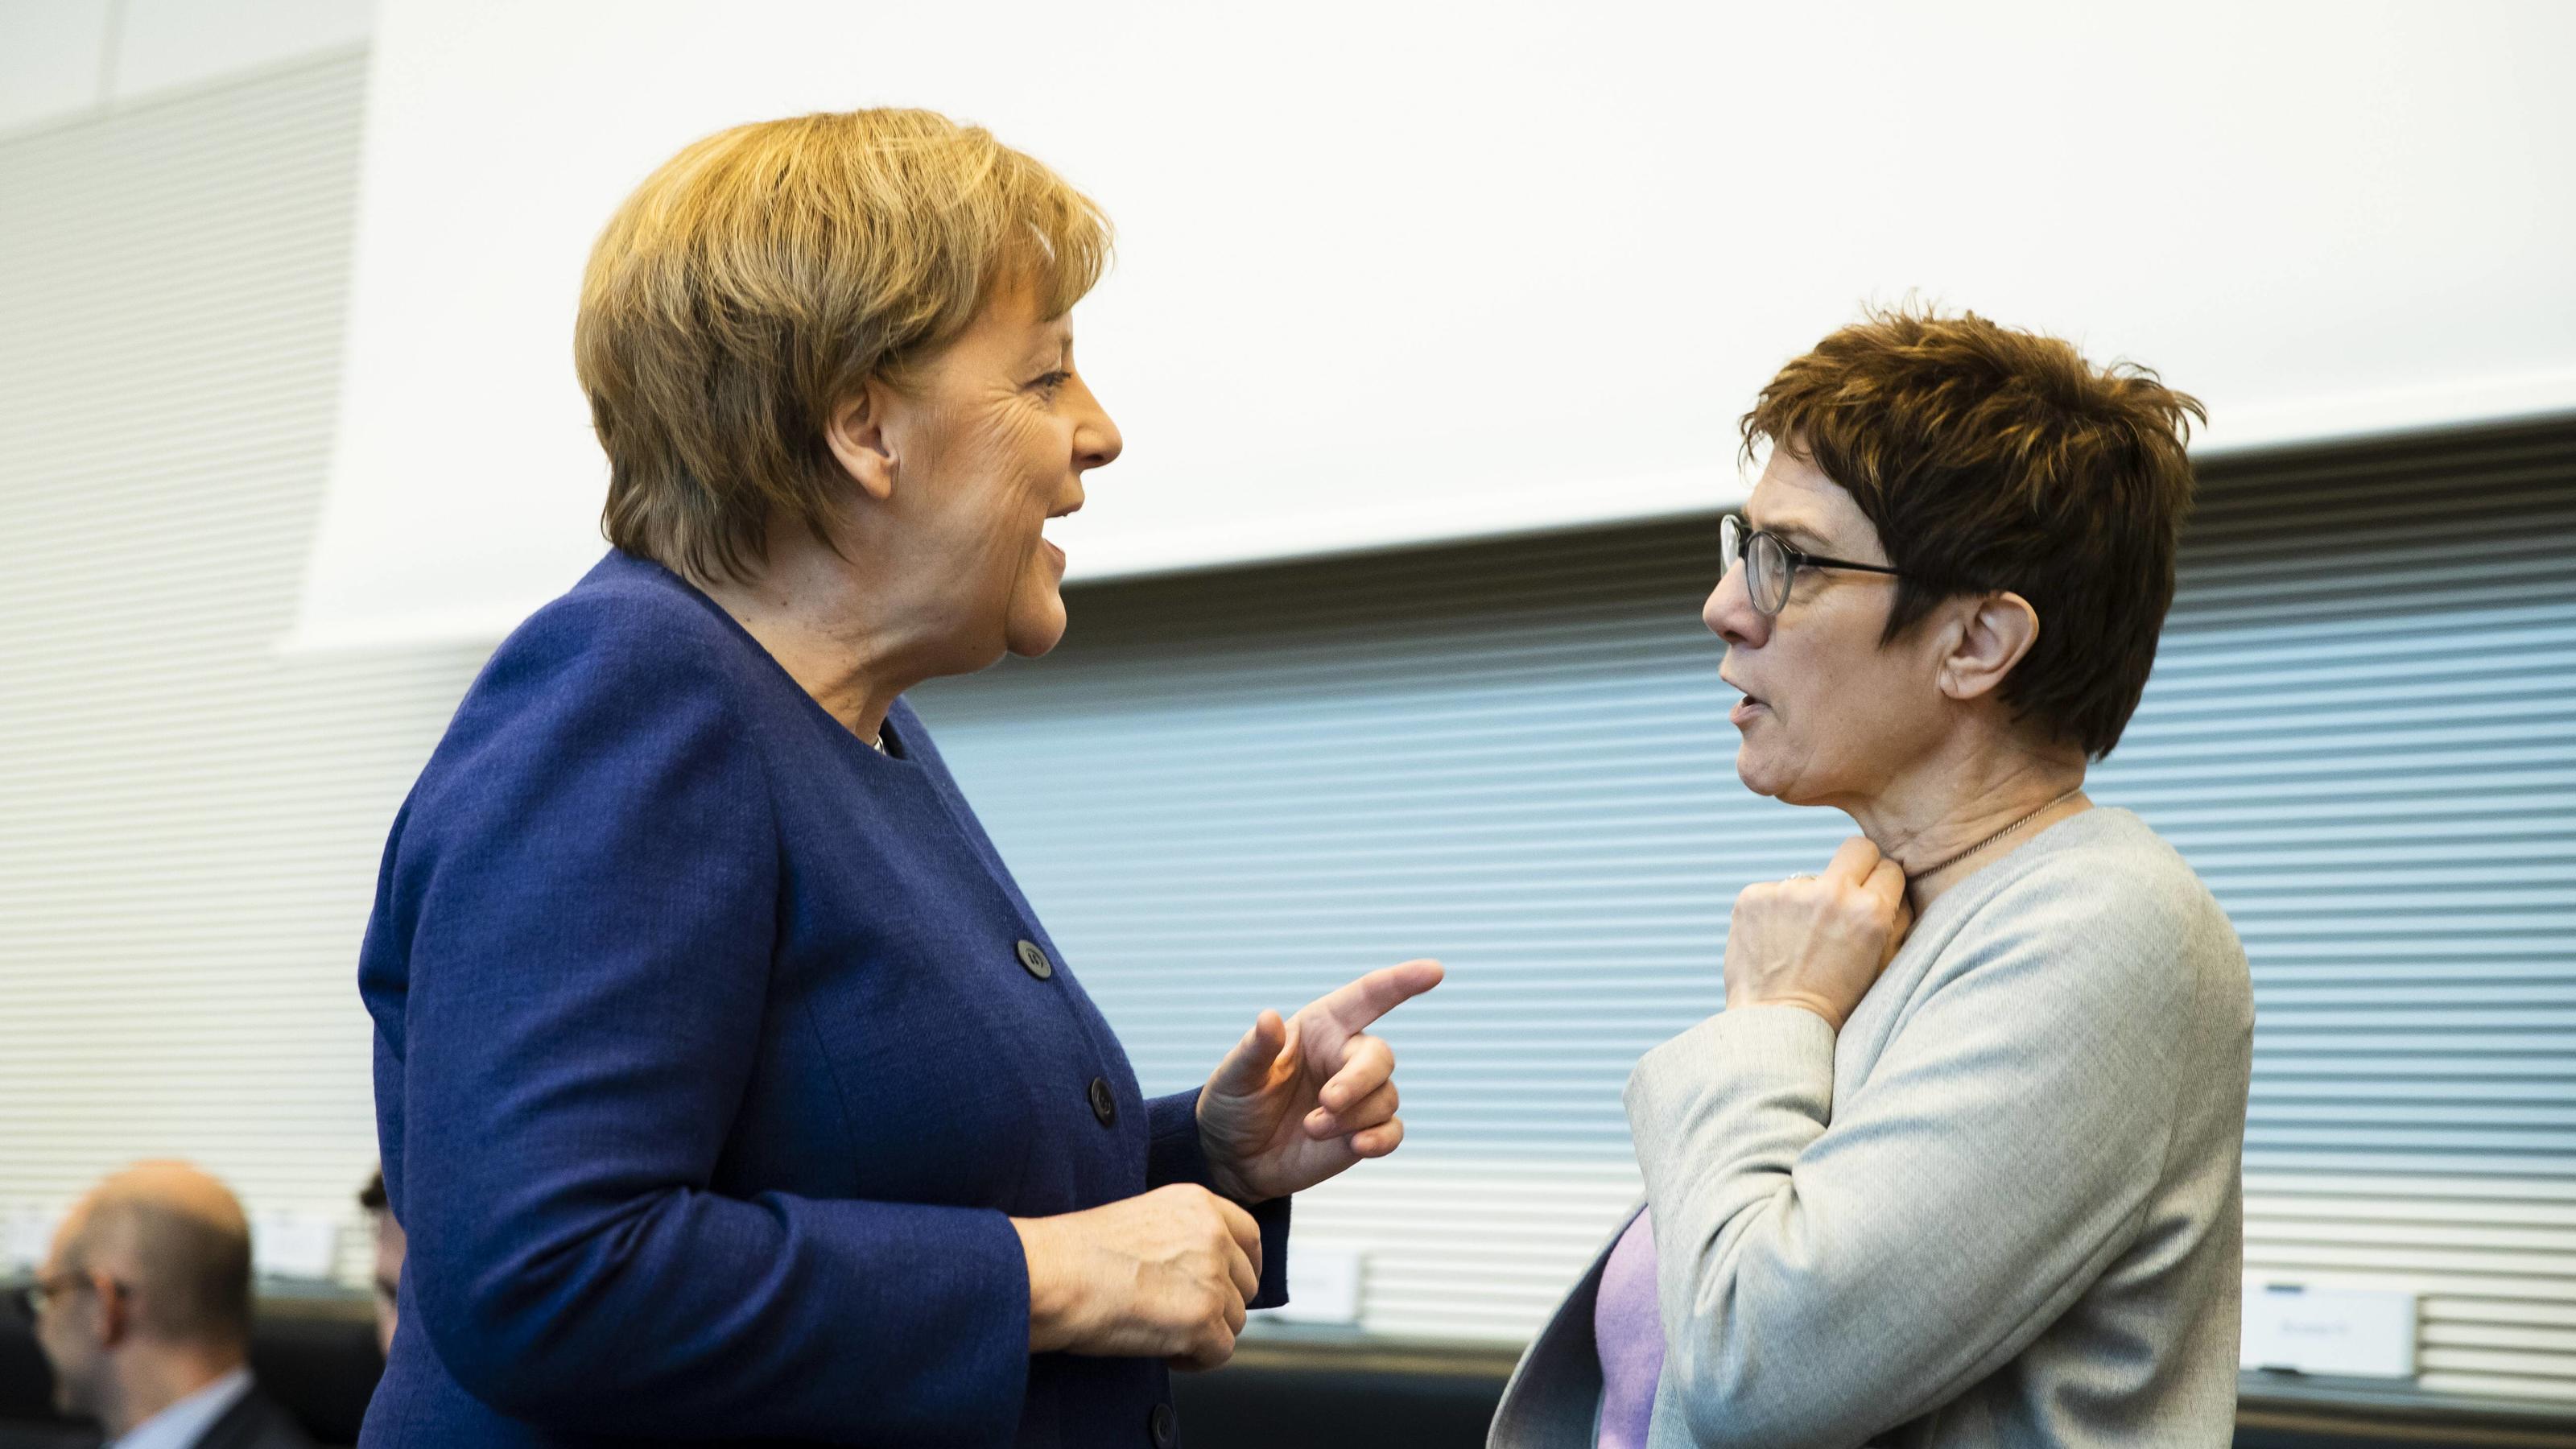 CDU Vorsitzende Annegret Kramp-Karrenbauer (R) spricht mit Bundeskanzlerin Angela Merkel (L) vor der Fraktionssitzung im Bundestag in Berlin am 19. Februar 2019. CDU/CSU Bundestagsfraktion Sitzung *** CDU Chairwoman Annegret Kramp Karrenbauer R talks